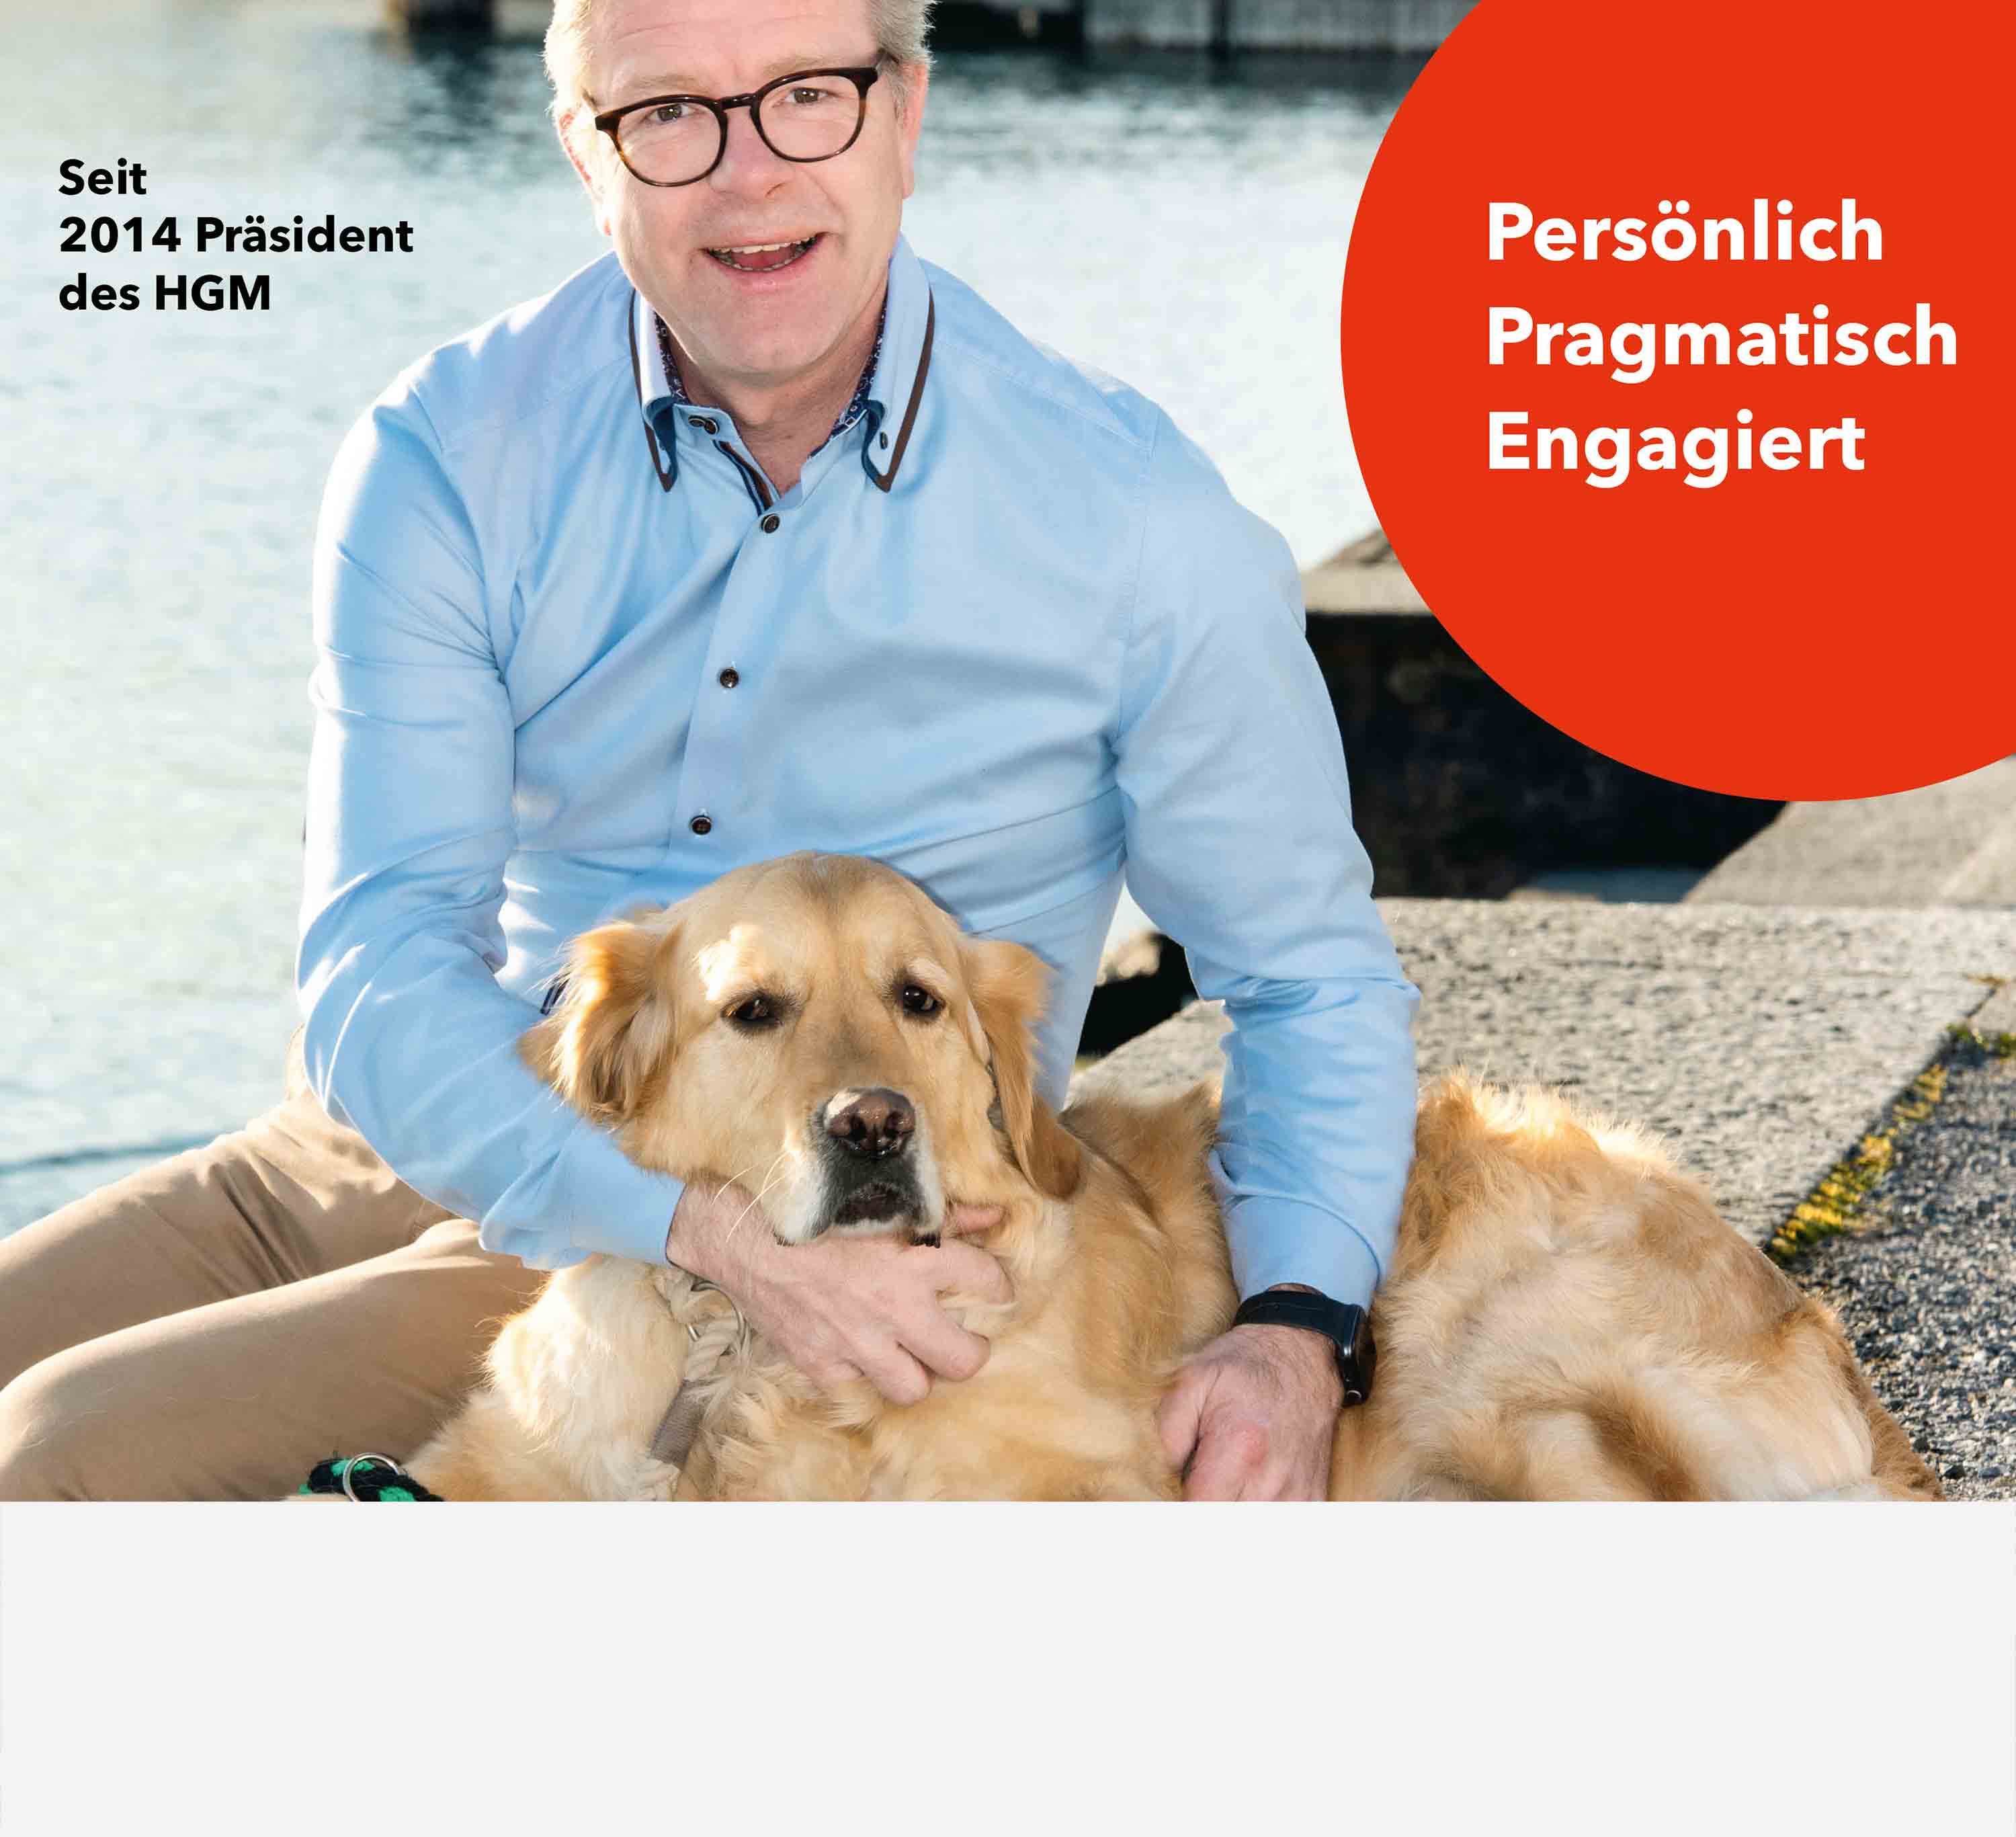 Plakat Werbung Wahlkampf Marcel Bussmann Meilen